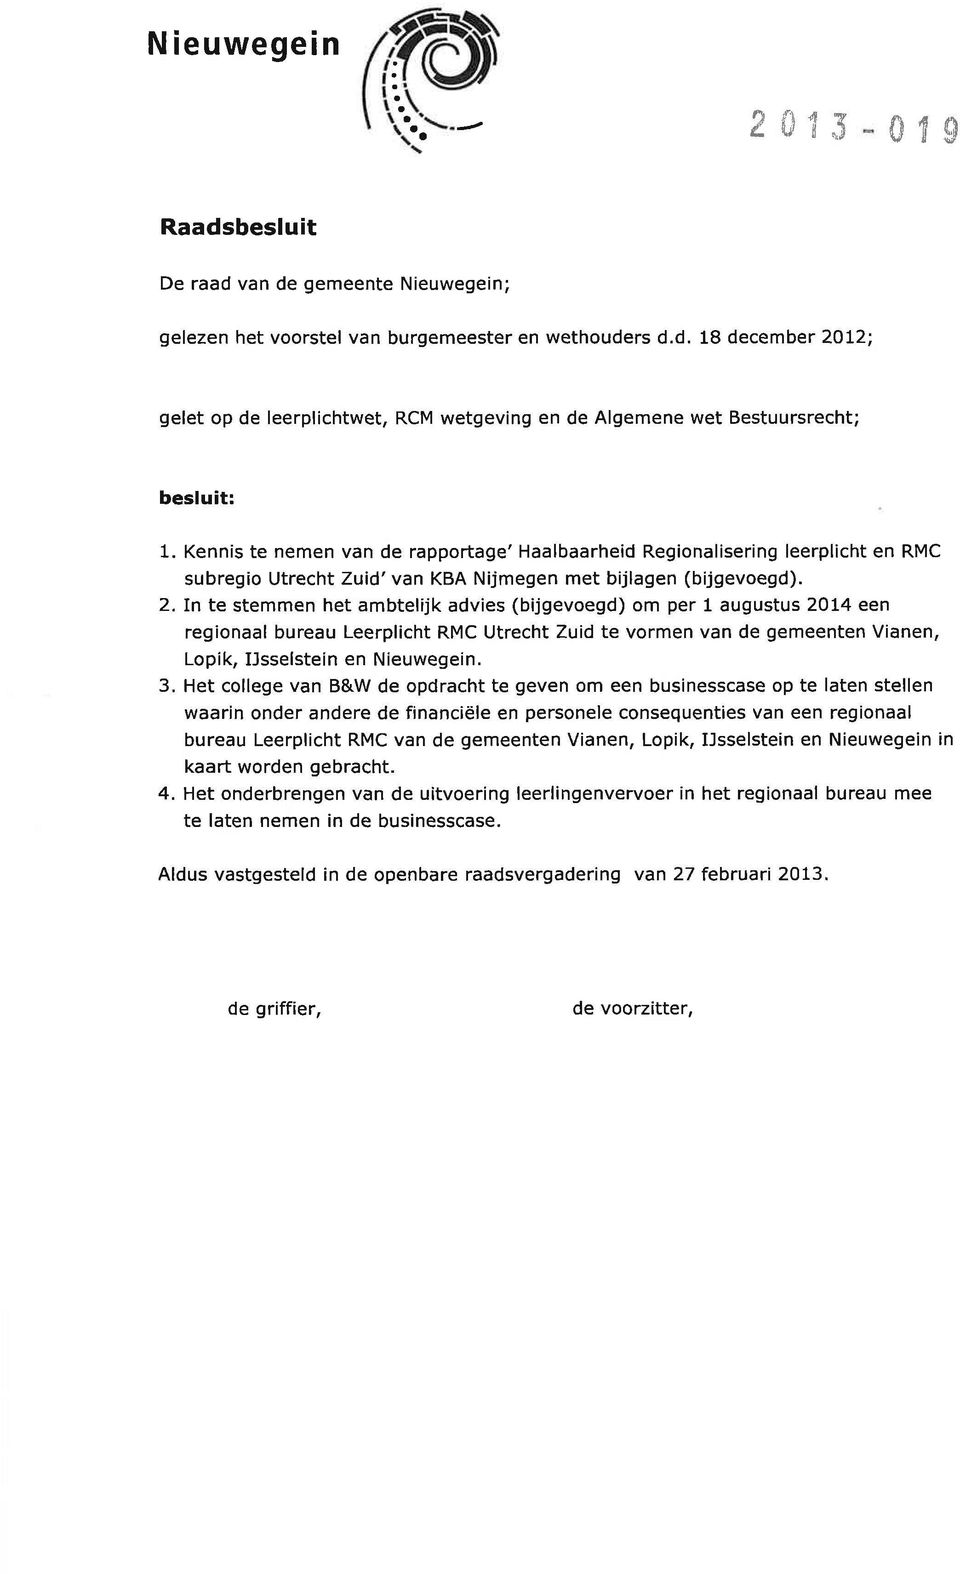 In te stemmen het ambtelijk advies (bijgevoegd) om per 1 augustus 2014 een regionaal bureau Leerplicht RMC Utrecht Zuid te vormen van de gemeenten Vianen, Lopik, IJsselstein en Nieuwegein. 3.